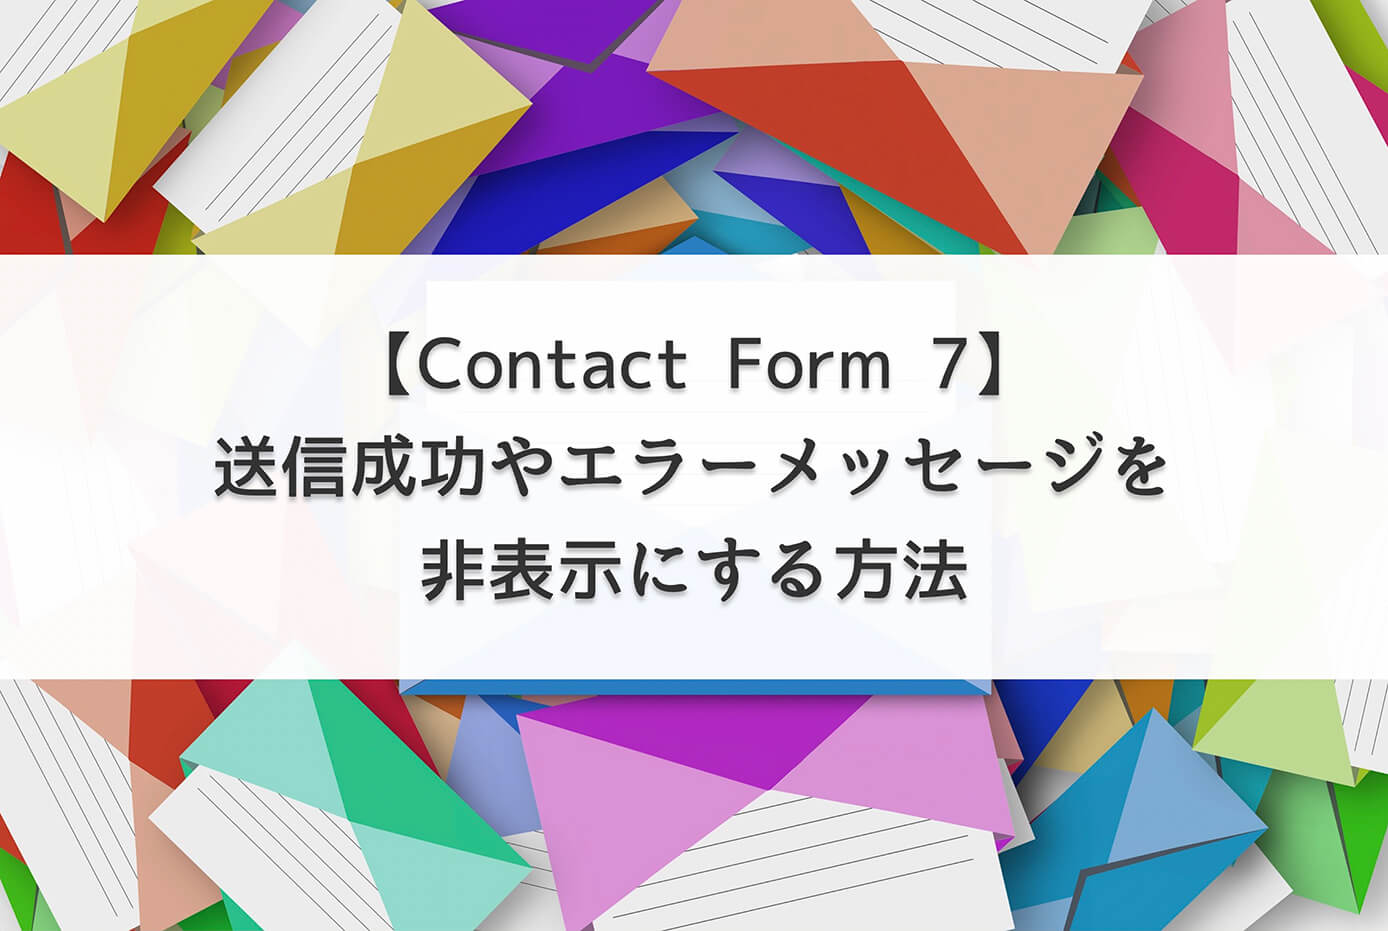 【Contact Form 7】送信成功やエラーメッセージを非表示にする方法